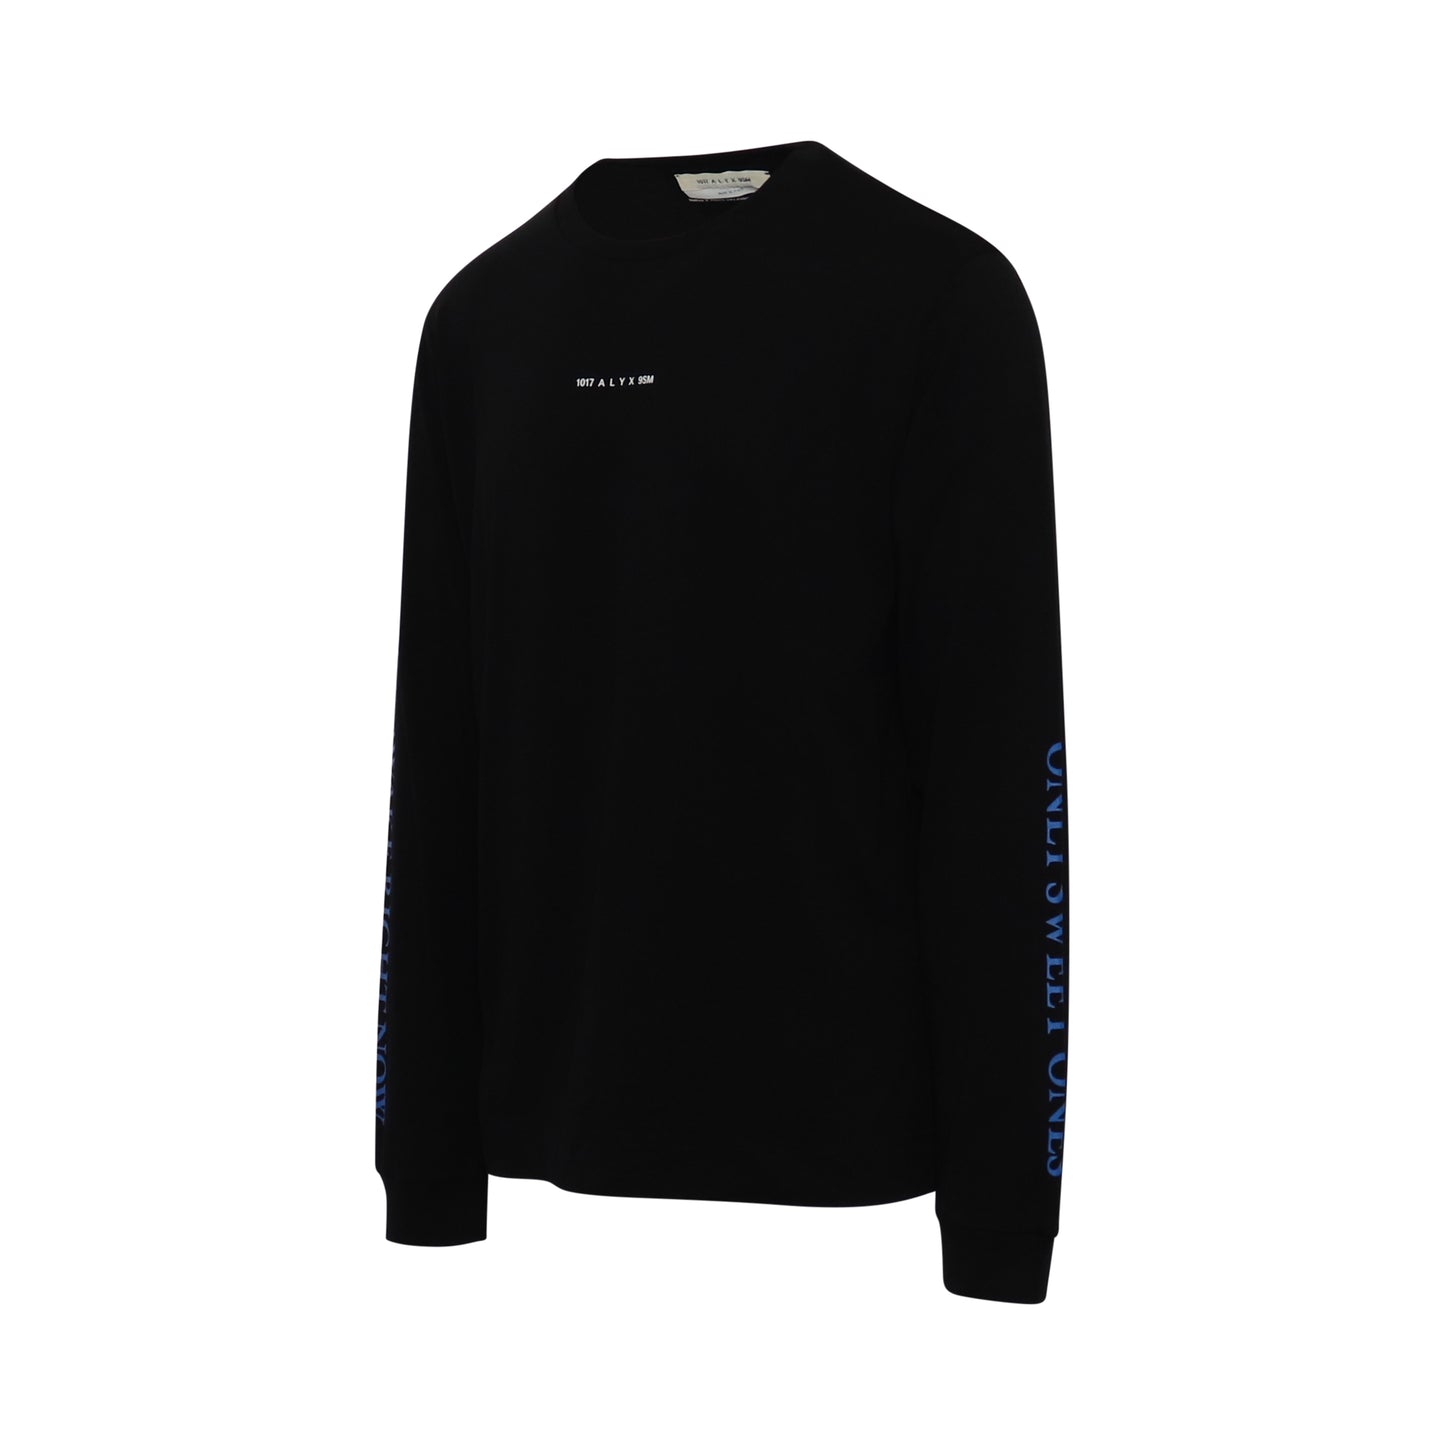 Horned Long Sleeve T-Shirt in Black